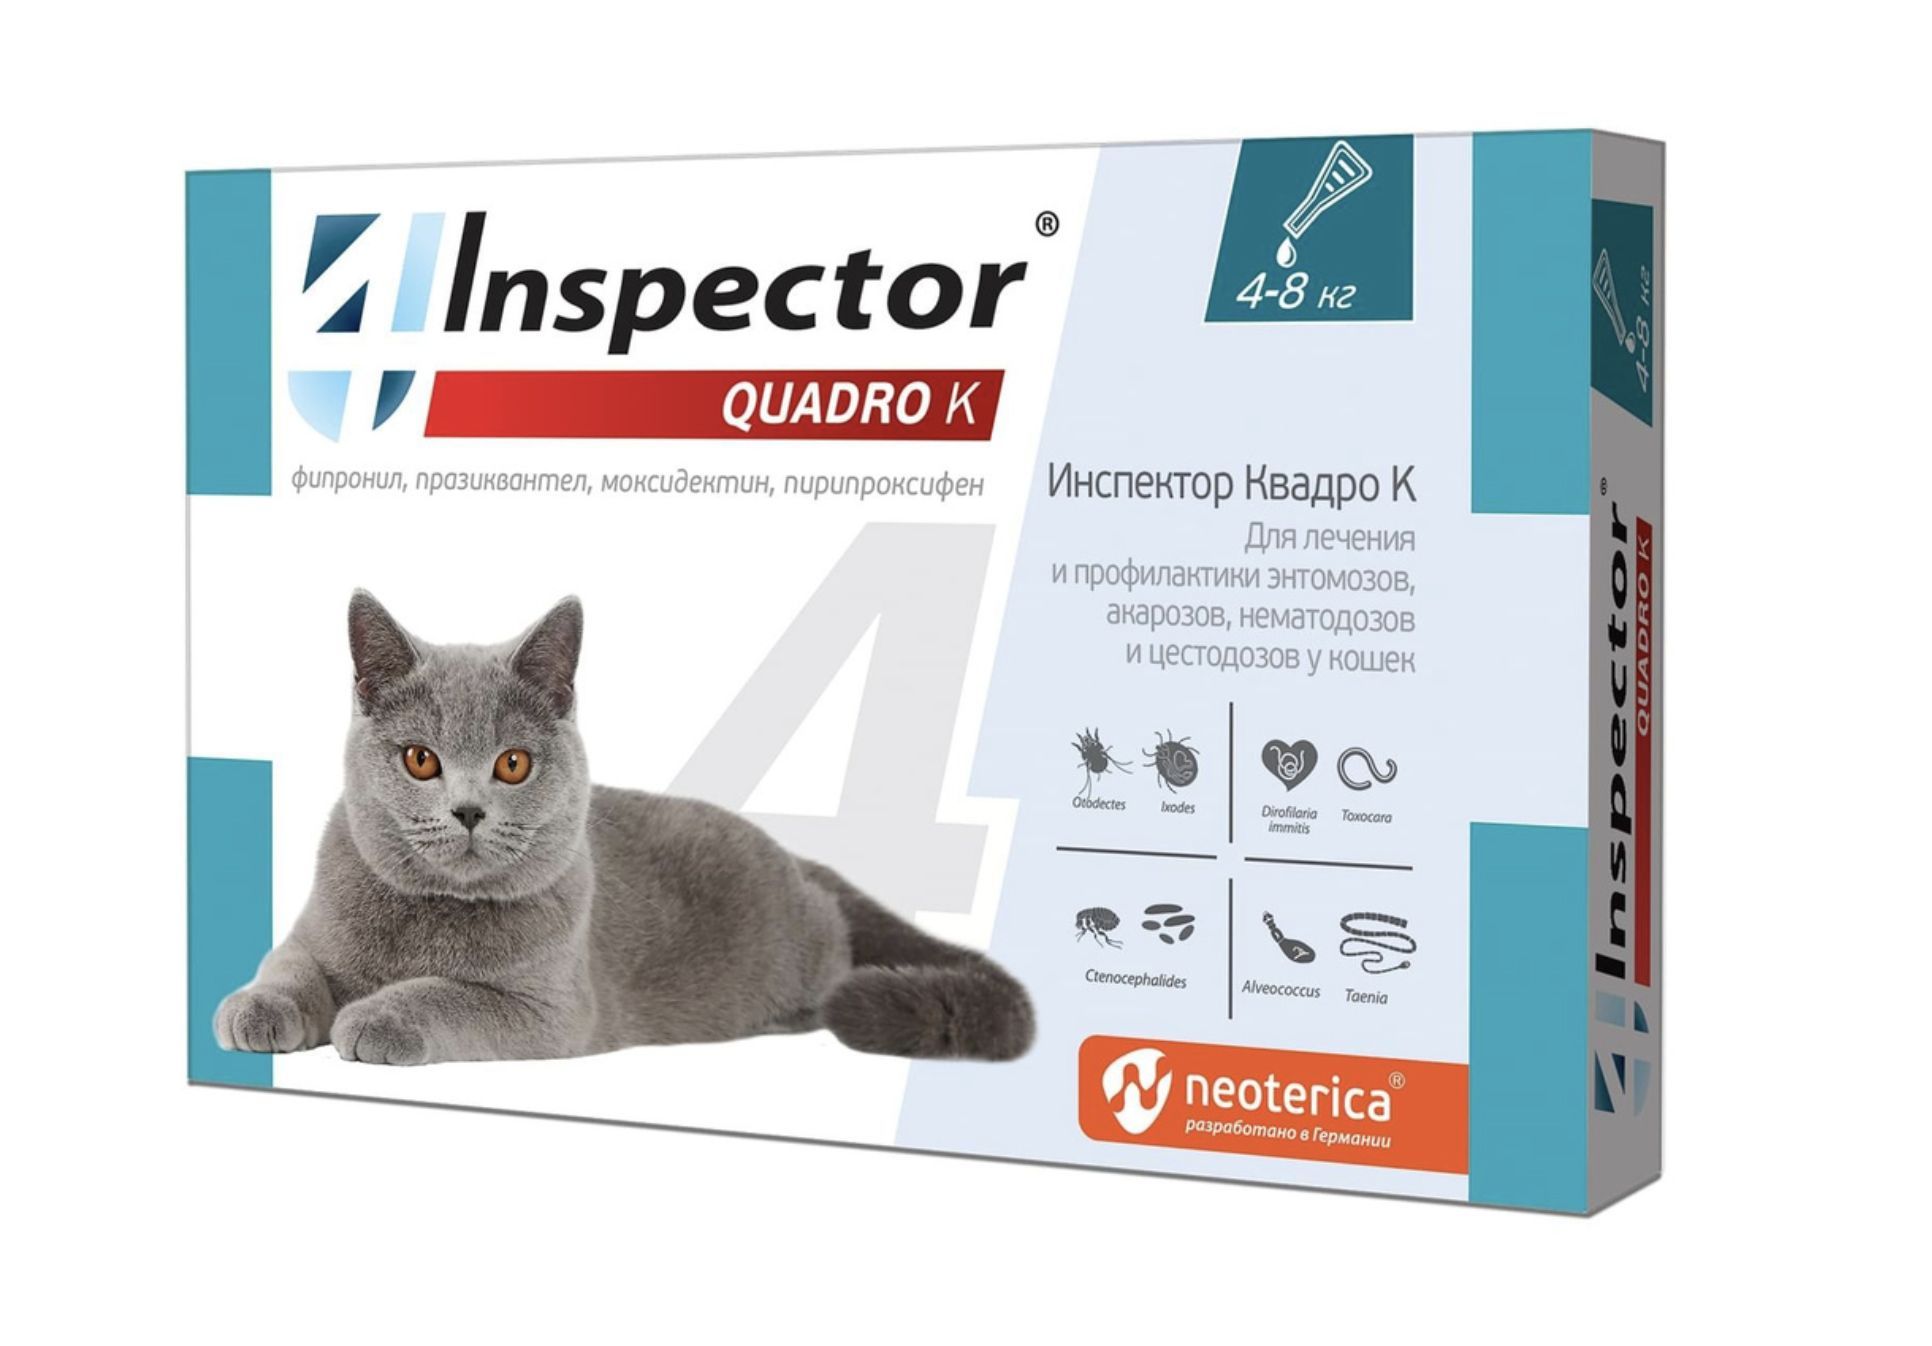 Капли от клещей инспектор для кошек. Капли для кошек от блох и глистов Inspector. Инспектор Квадро капли для кошек. Инспектор капли для кошек 1-4 кг. Капли для кошек "Inspector Quadro" 1-4 кг от блох.